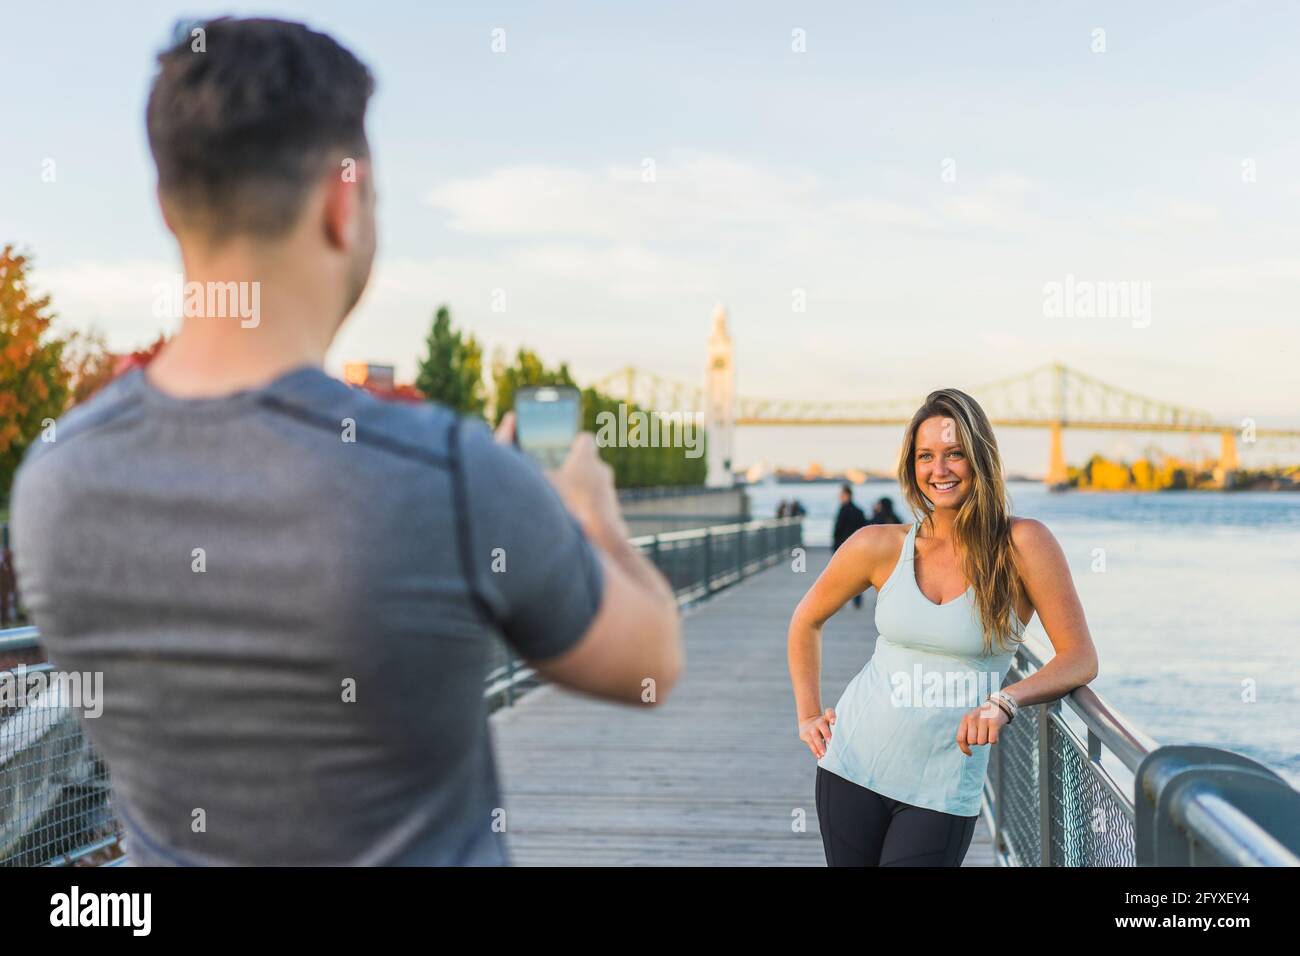 Entraînement partenaires prenant des selfies dans le vieux quartier portuaire, Montréal, Québec, Canada Banque D'Images